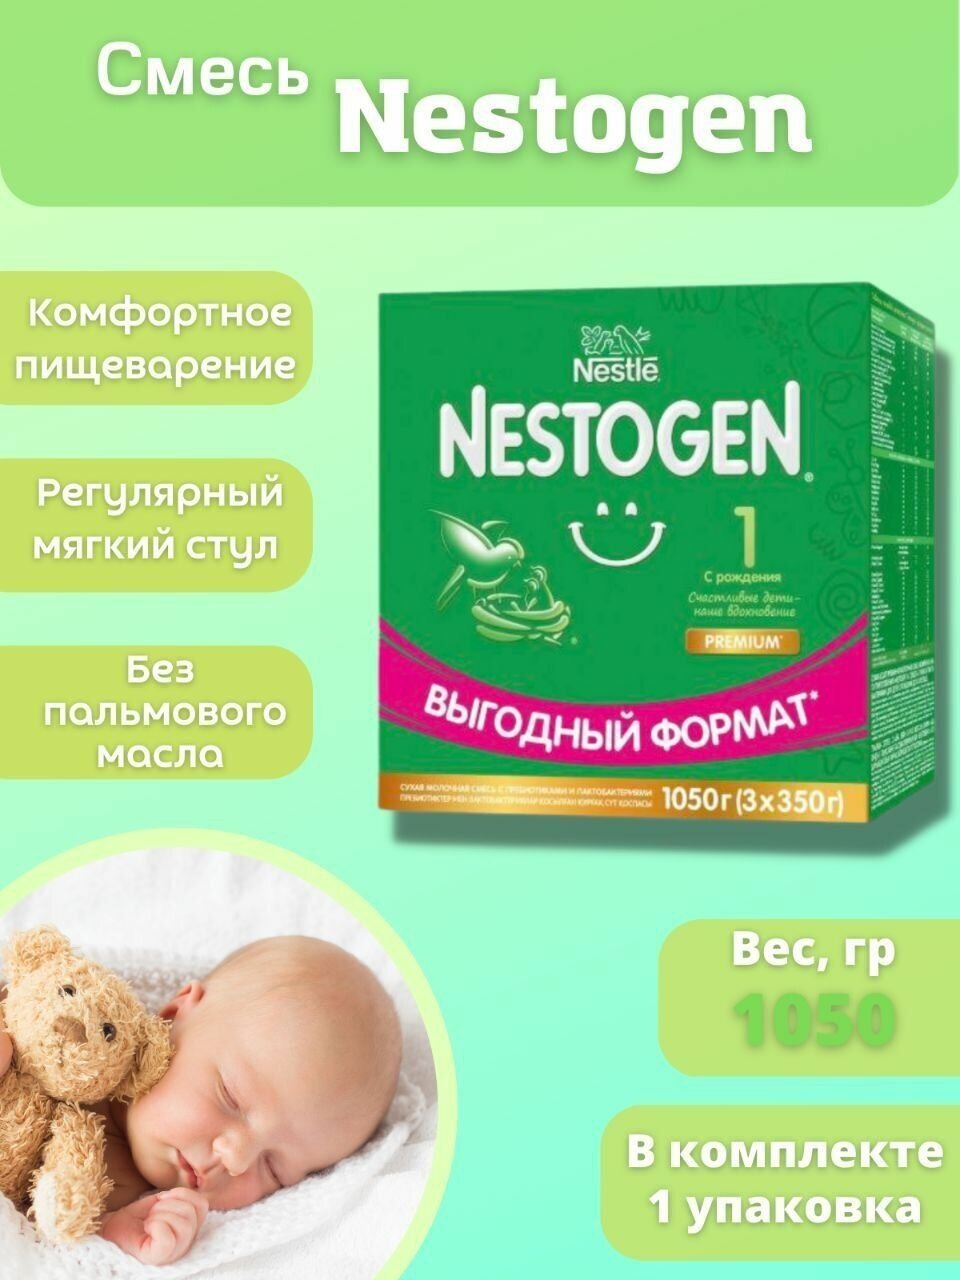 Nestogen® 1 Сухая молочная смесь для регулярного мягкого стула, 300гр - фото №13